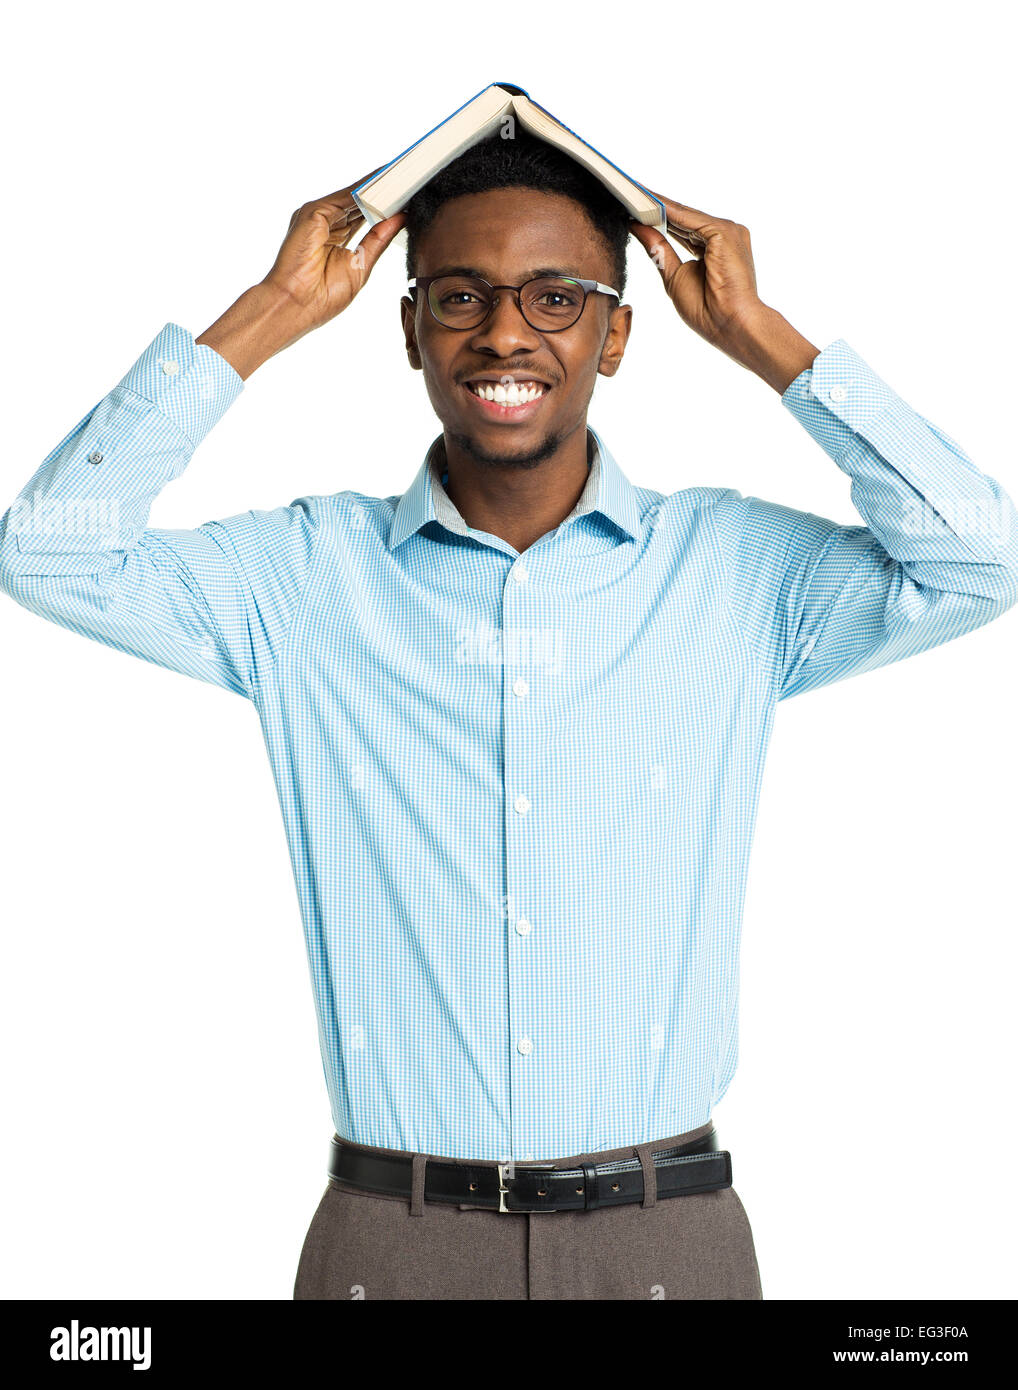 Happy african american college student standing avec livre sur sa tête sur fond blanc Banque D'Images